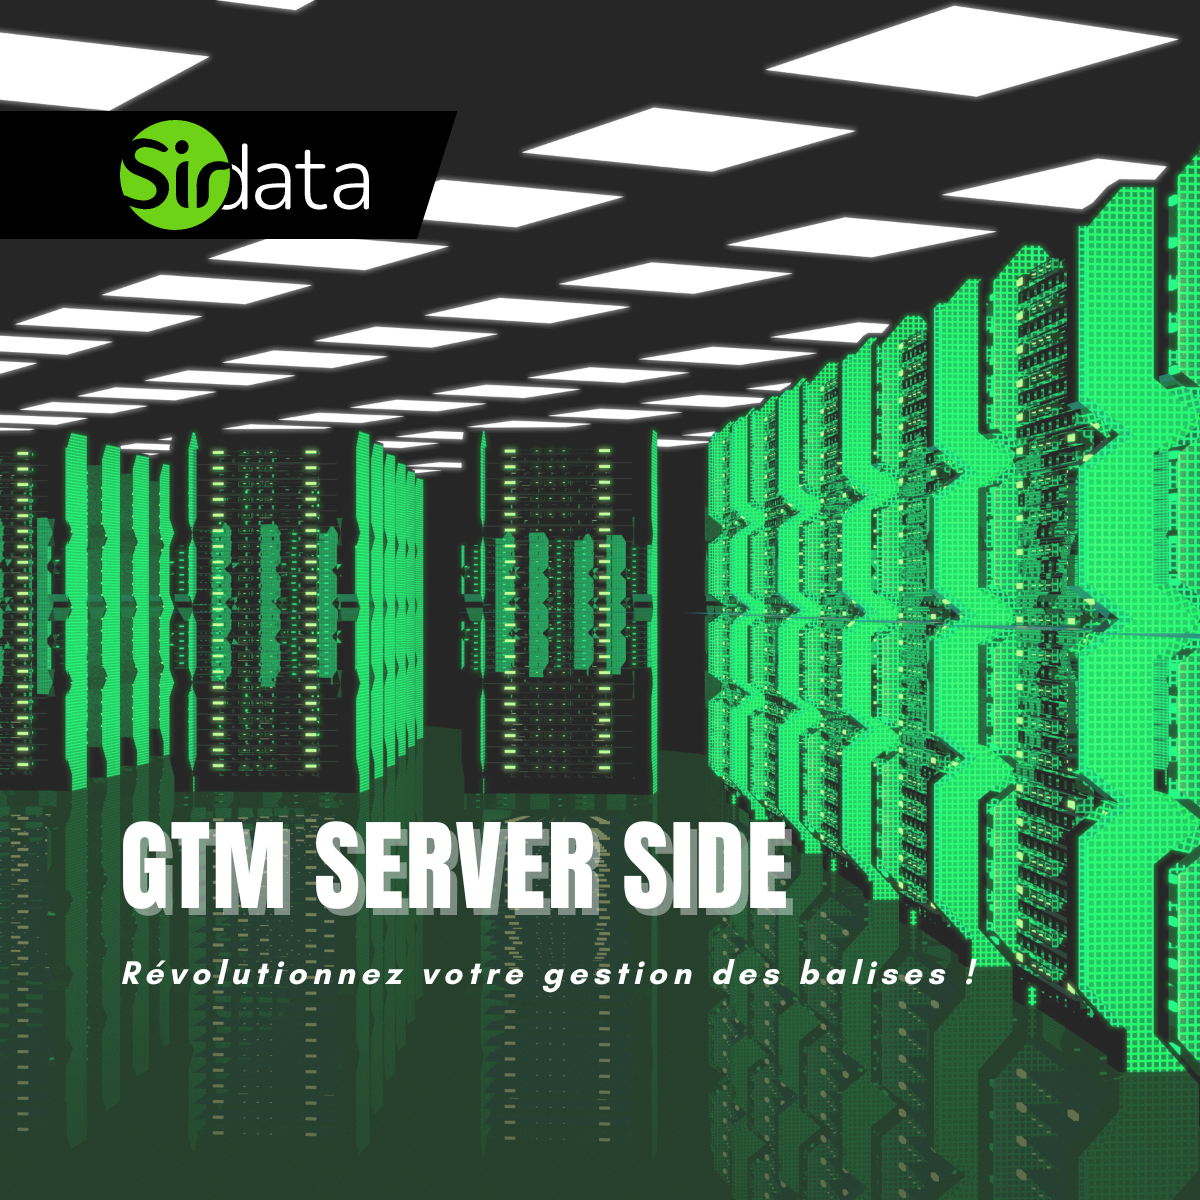 GTM Server Side ? Mais pourquoi ?